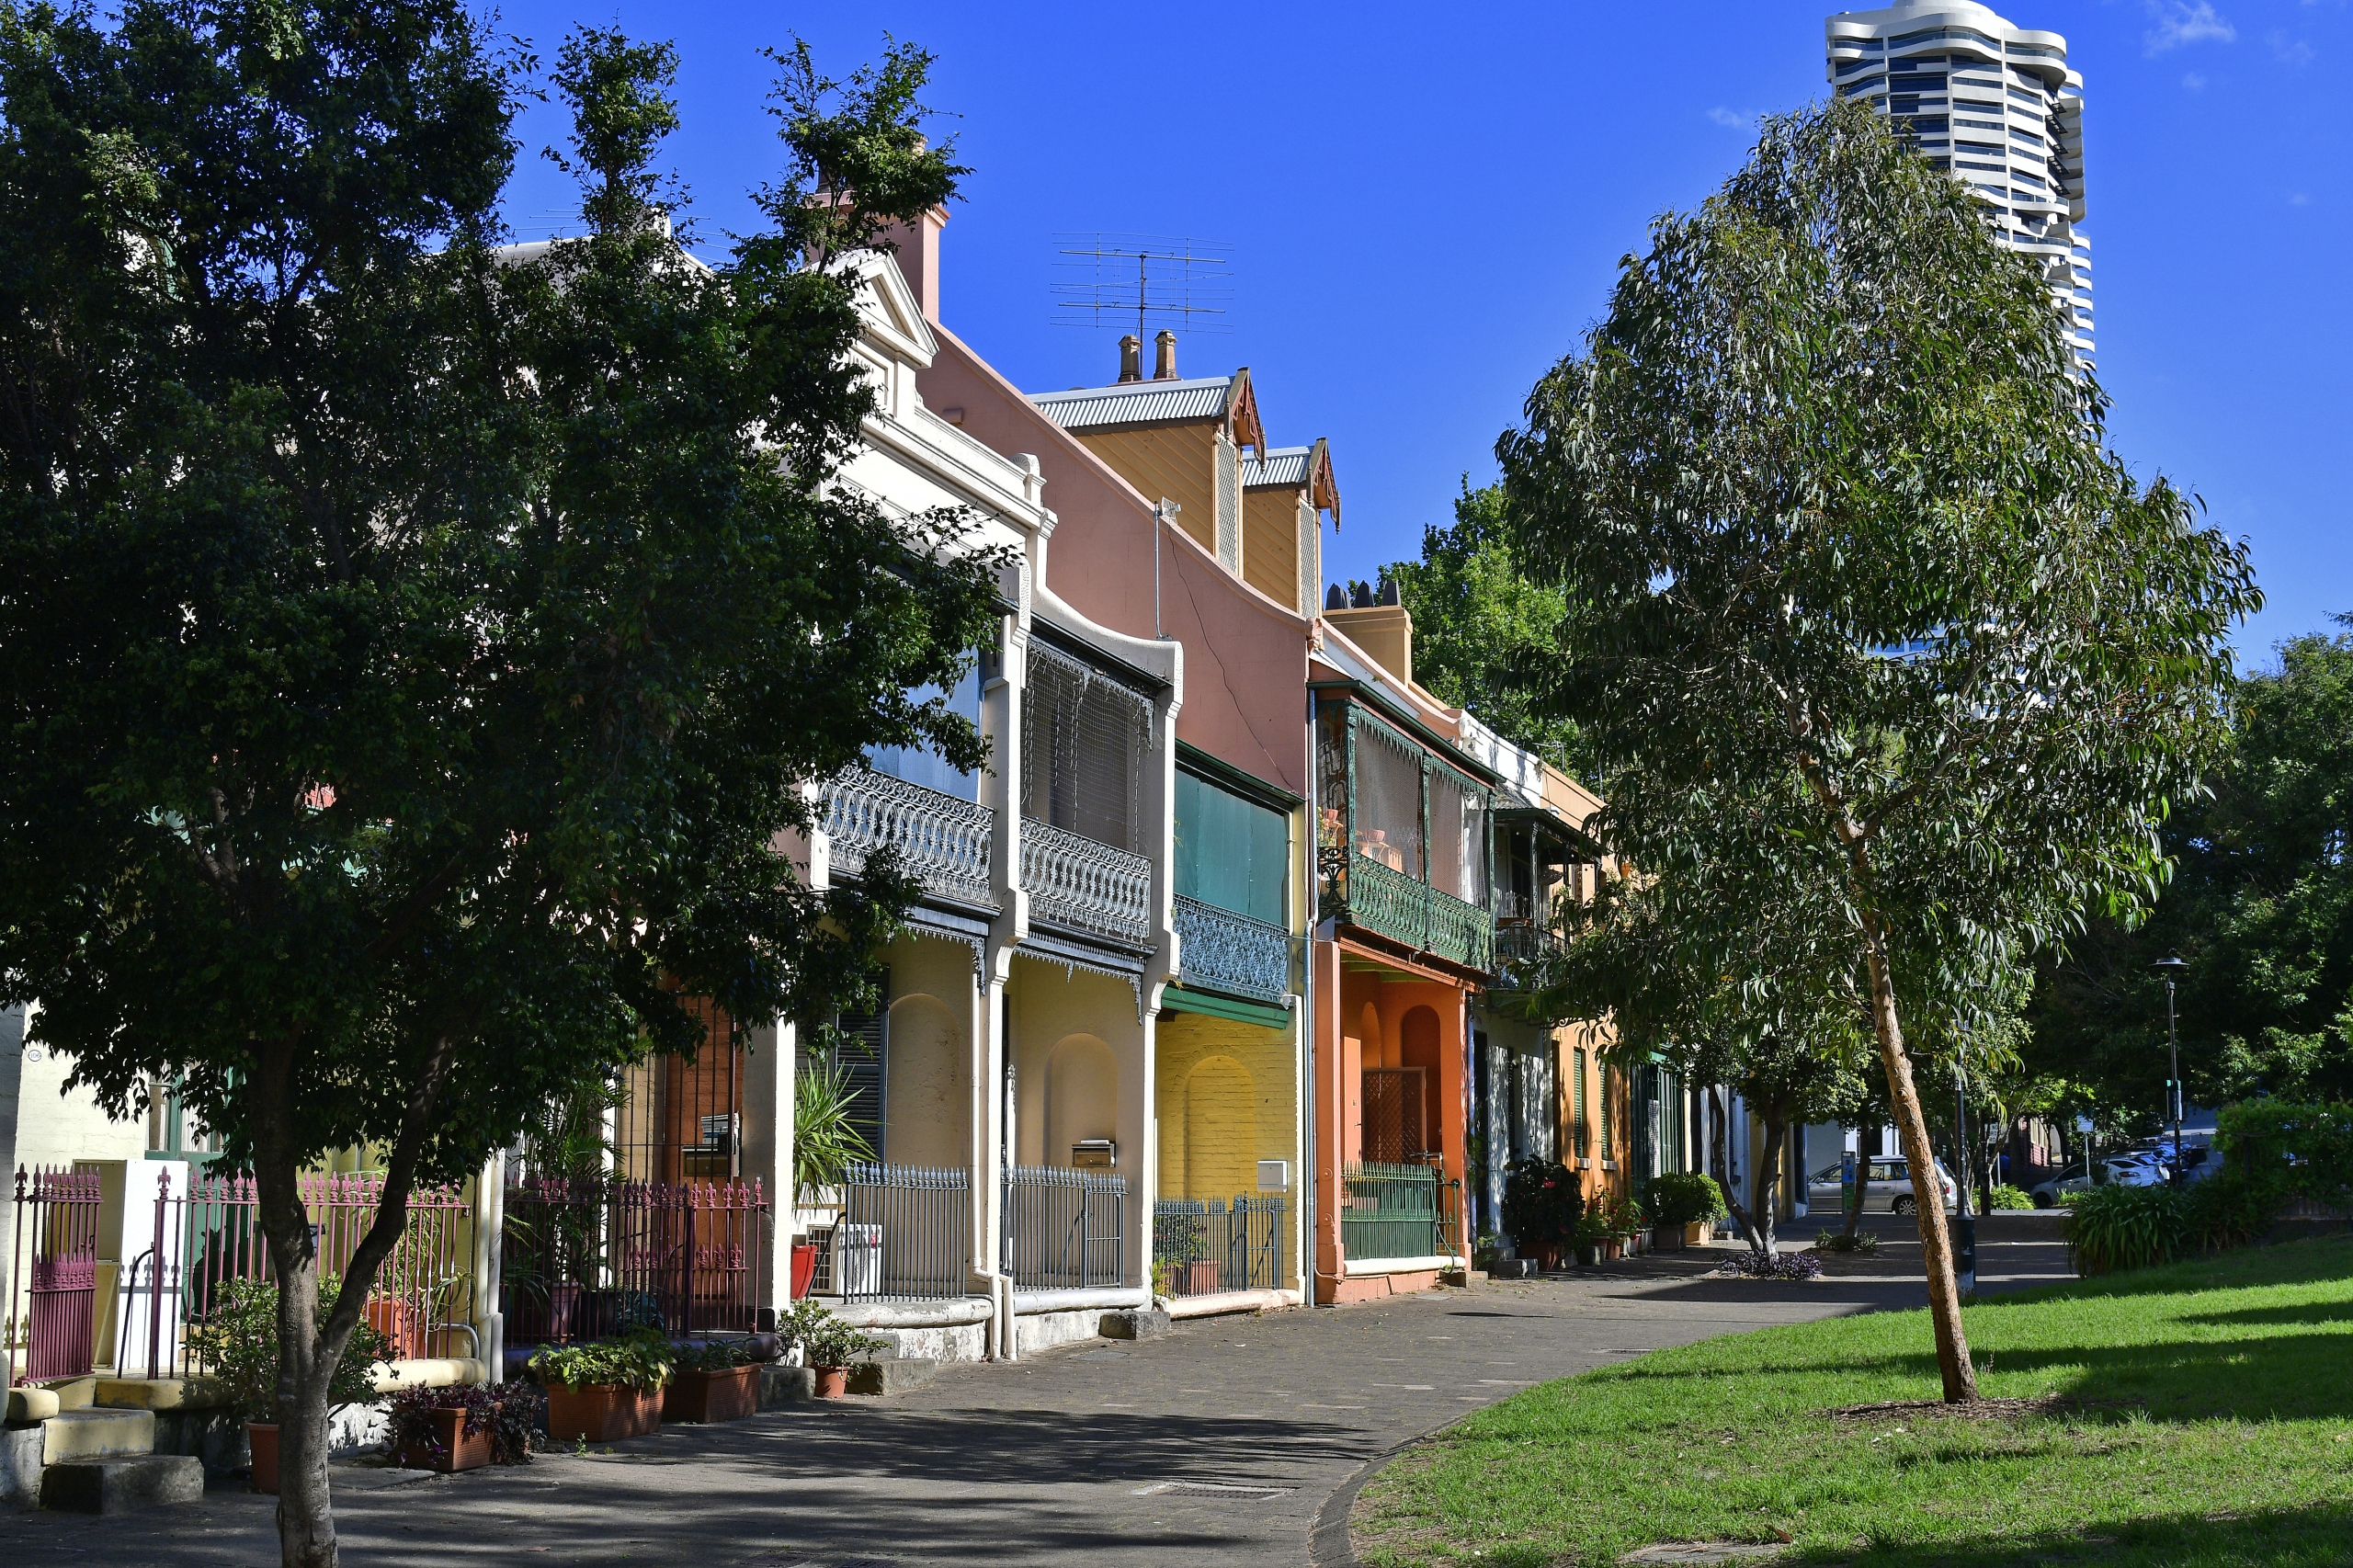 2023 Sydney Property Market Outlook